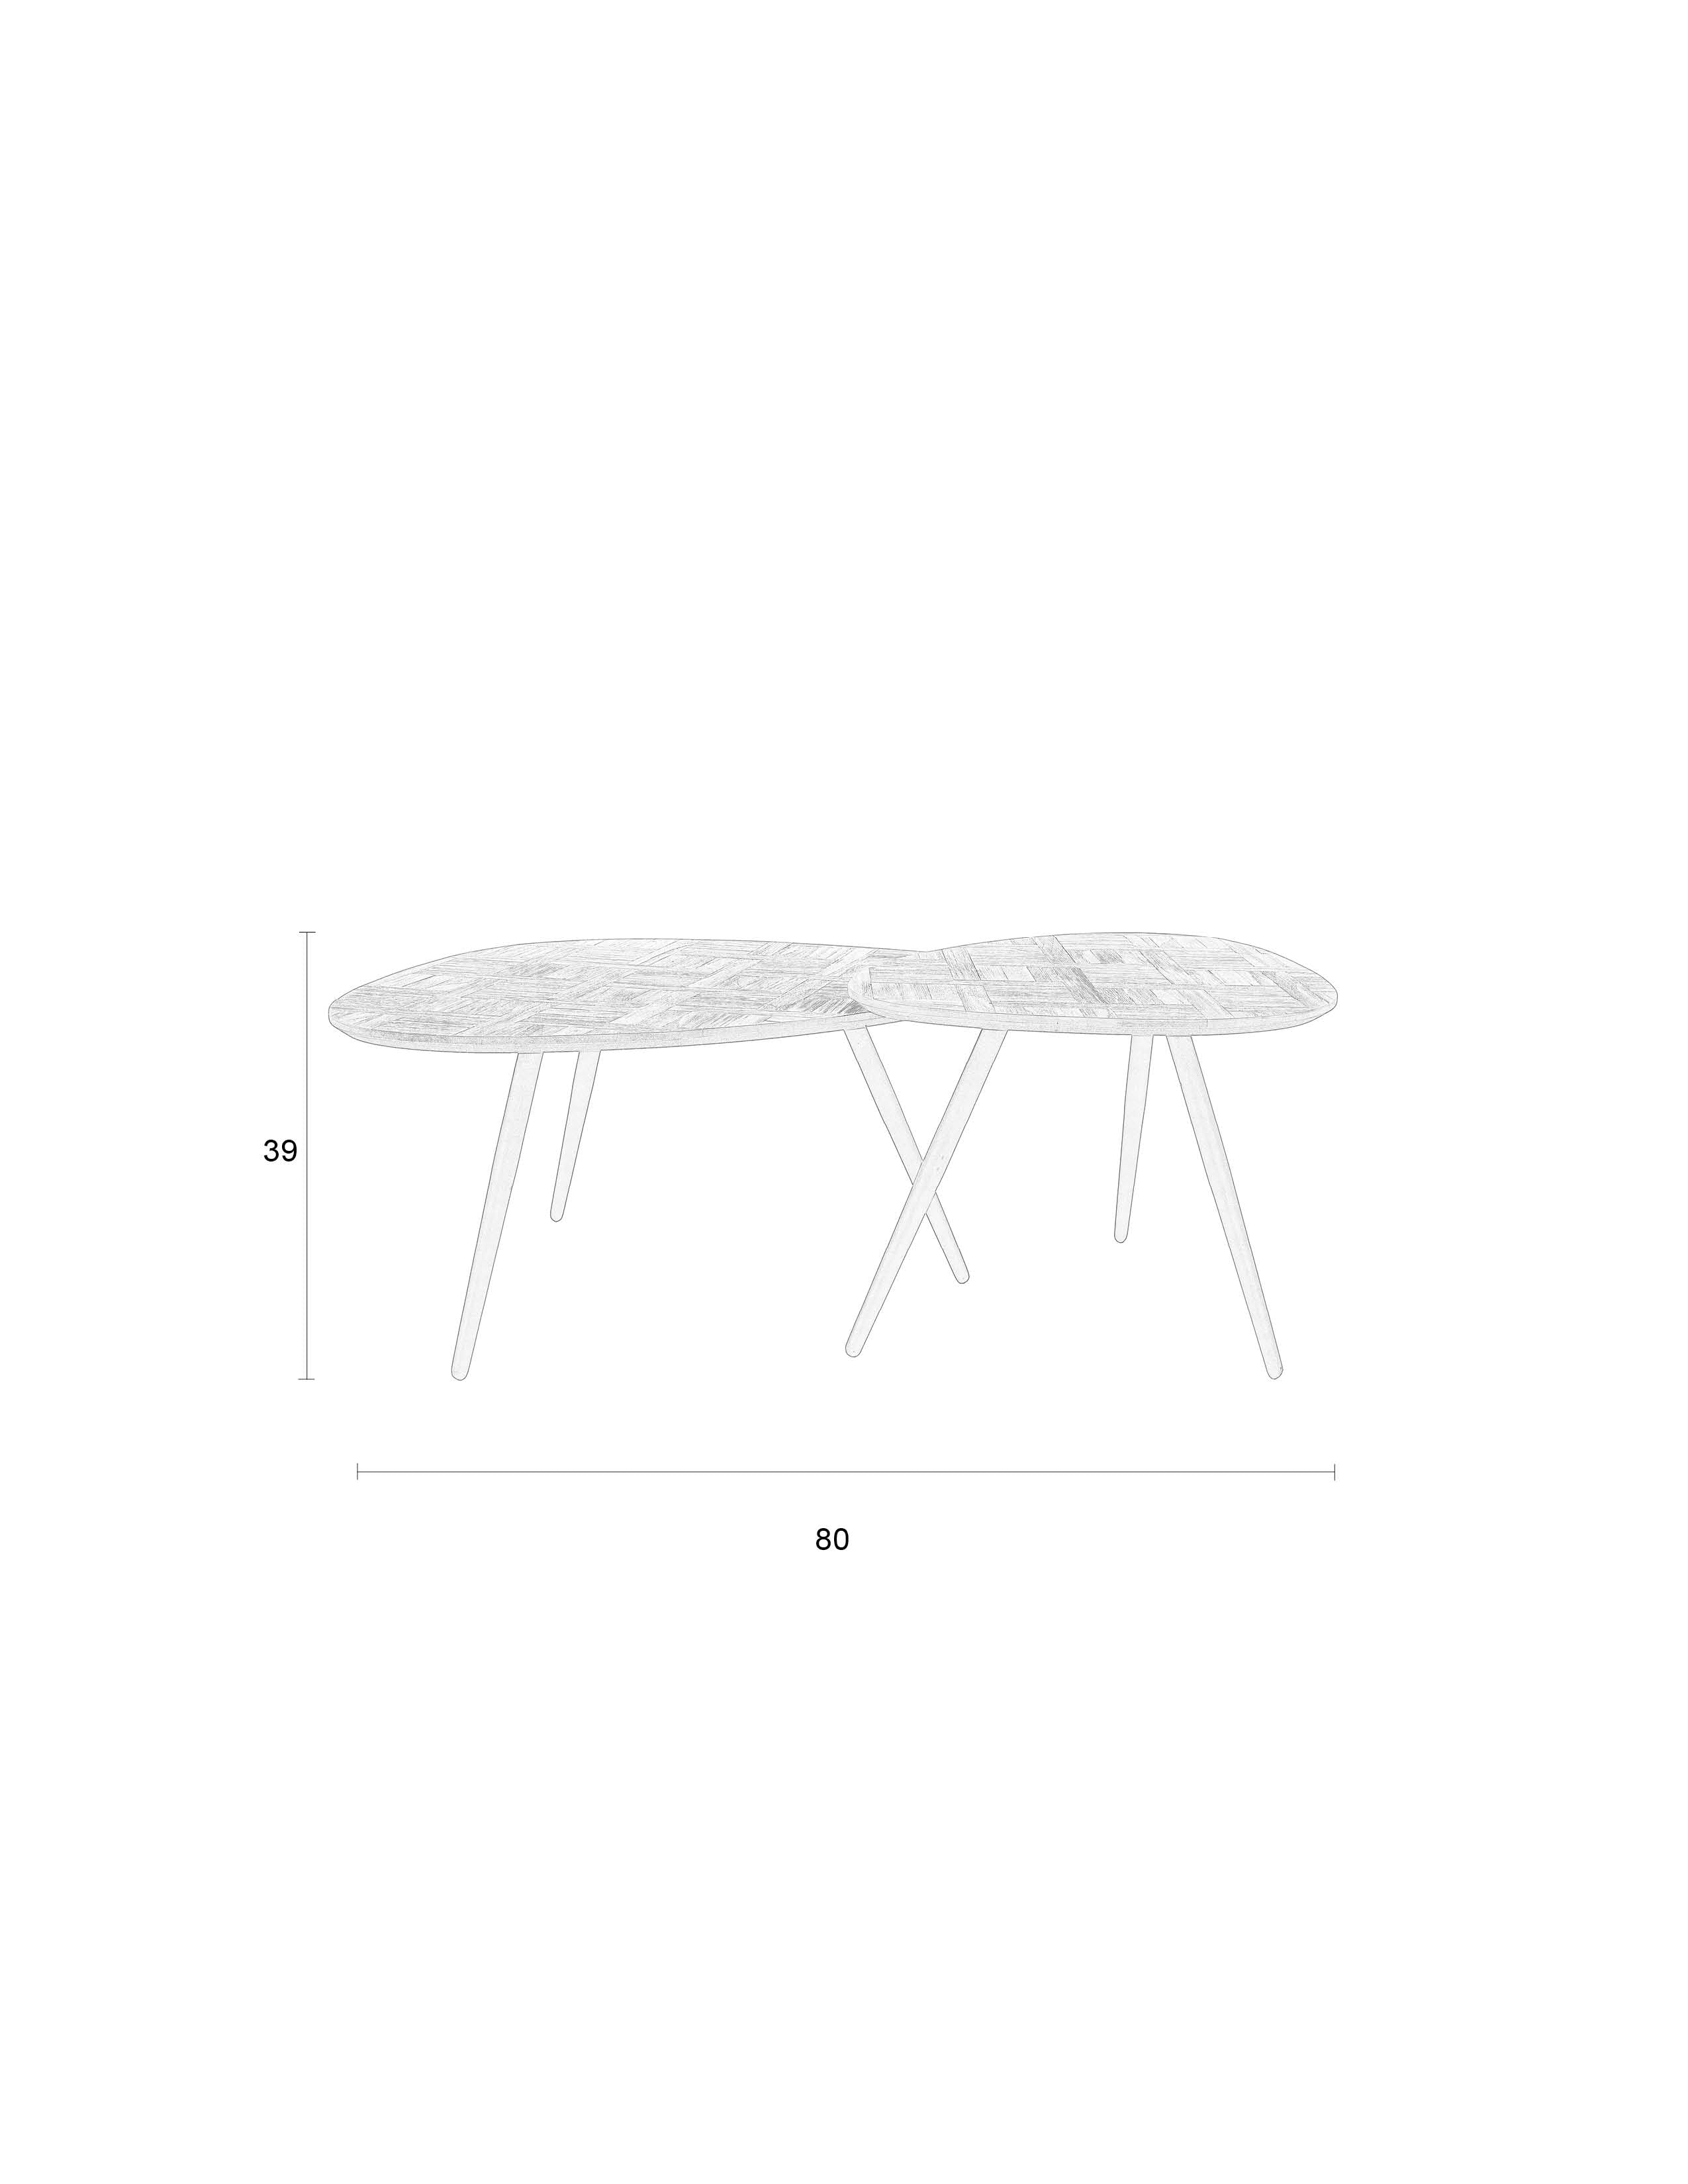 Coffee Tisch Pion (Set Of 2) in Dunkelbraun/Schwarz präsentiert im Onlineshop von KAQTU Design AG. Beistelltisch ist von White Label Living